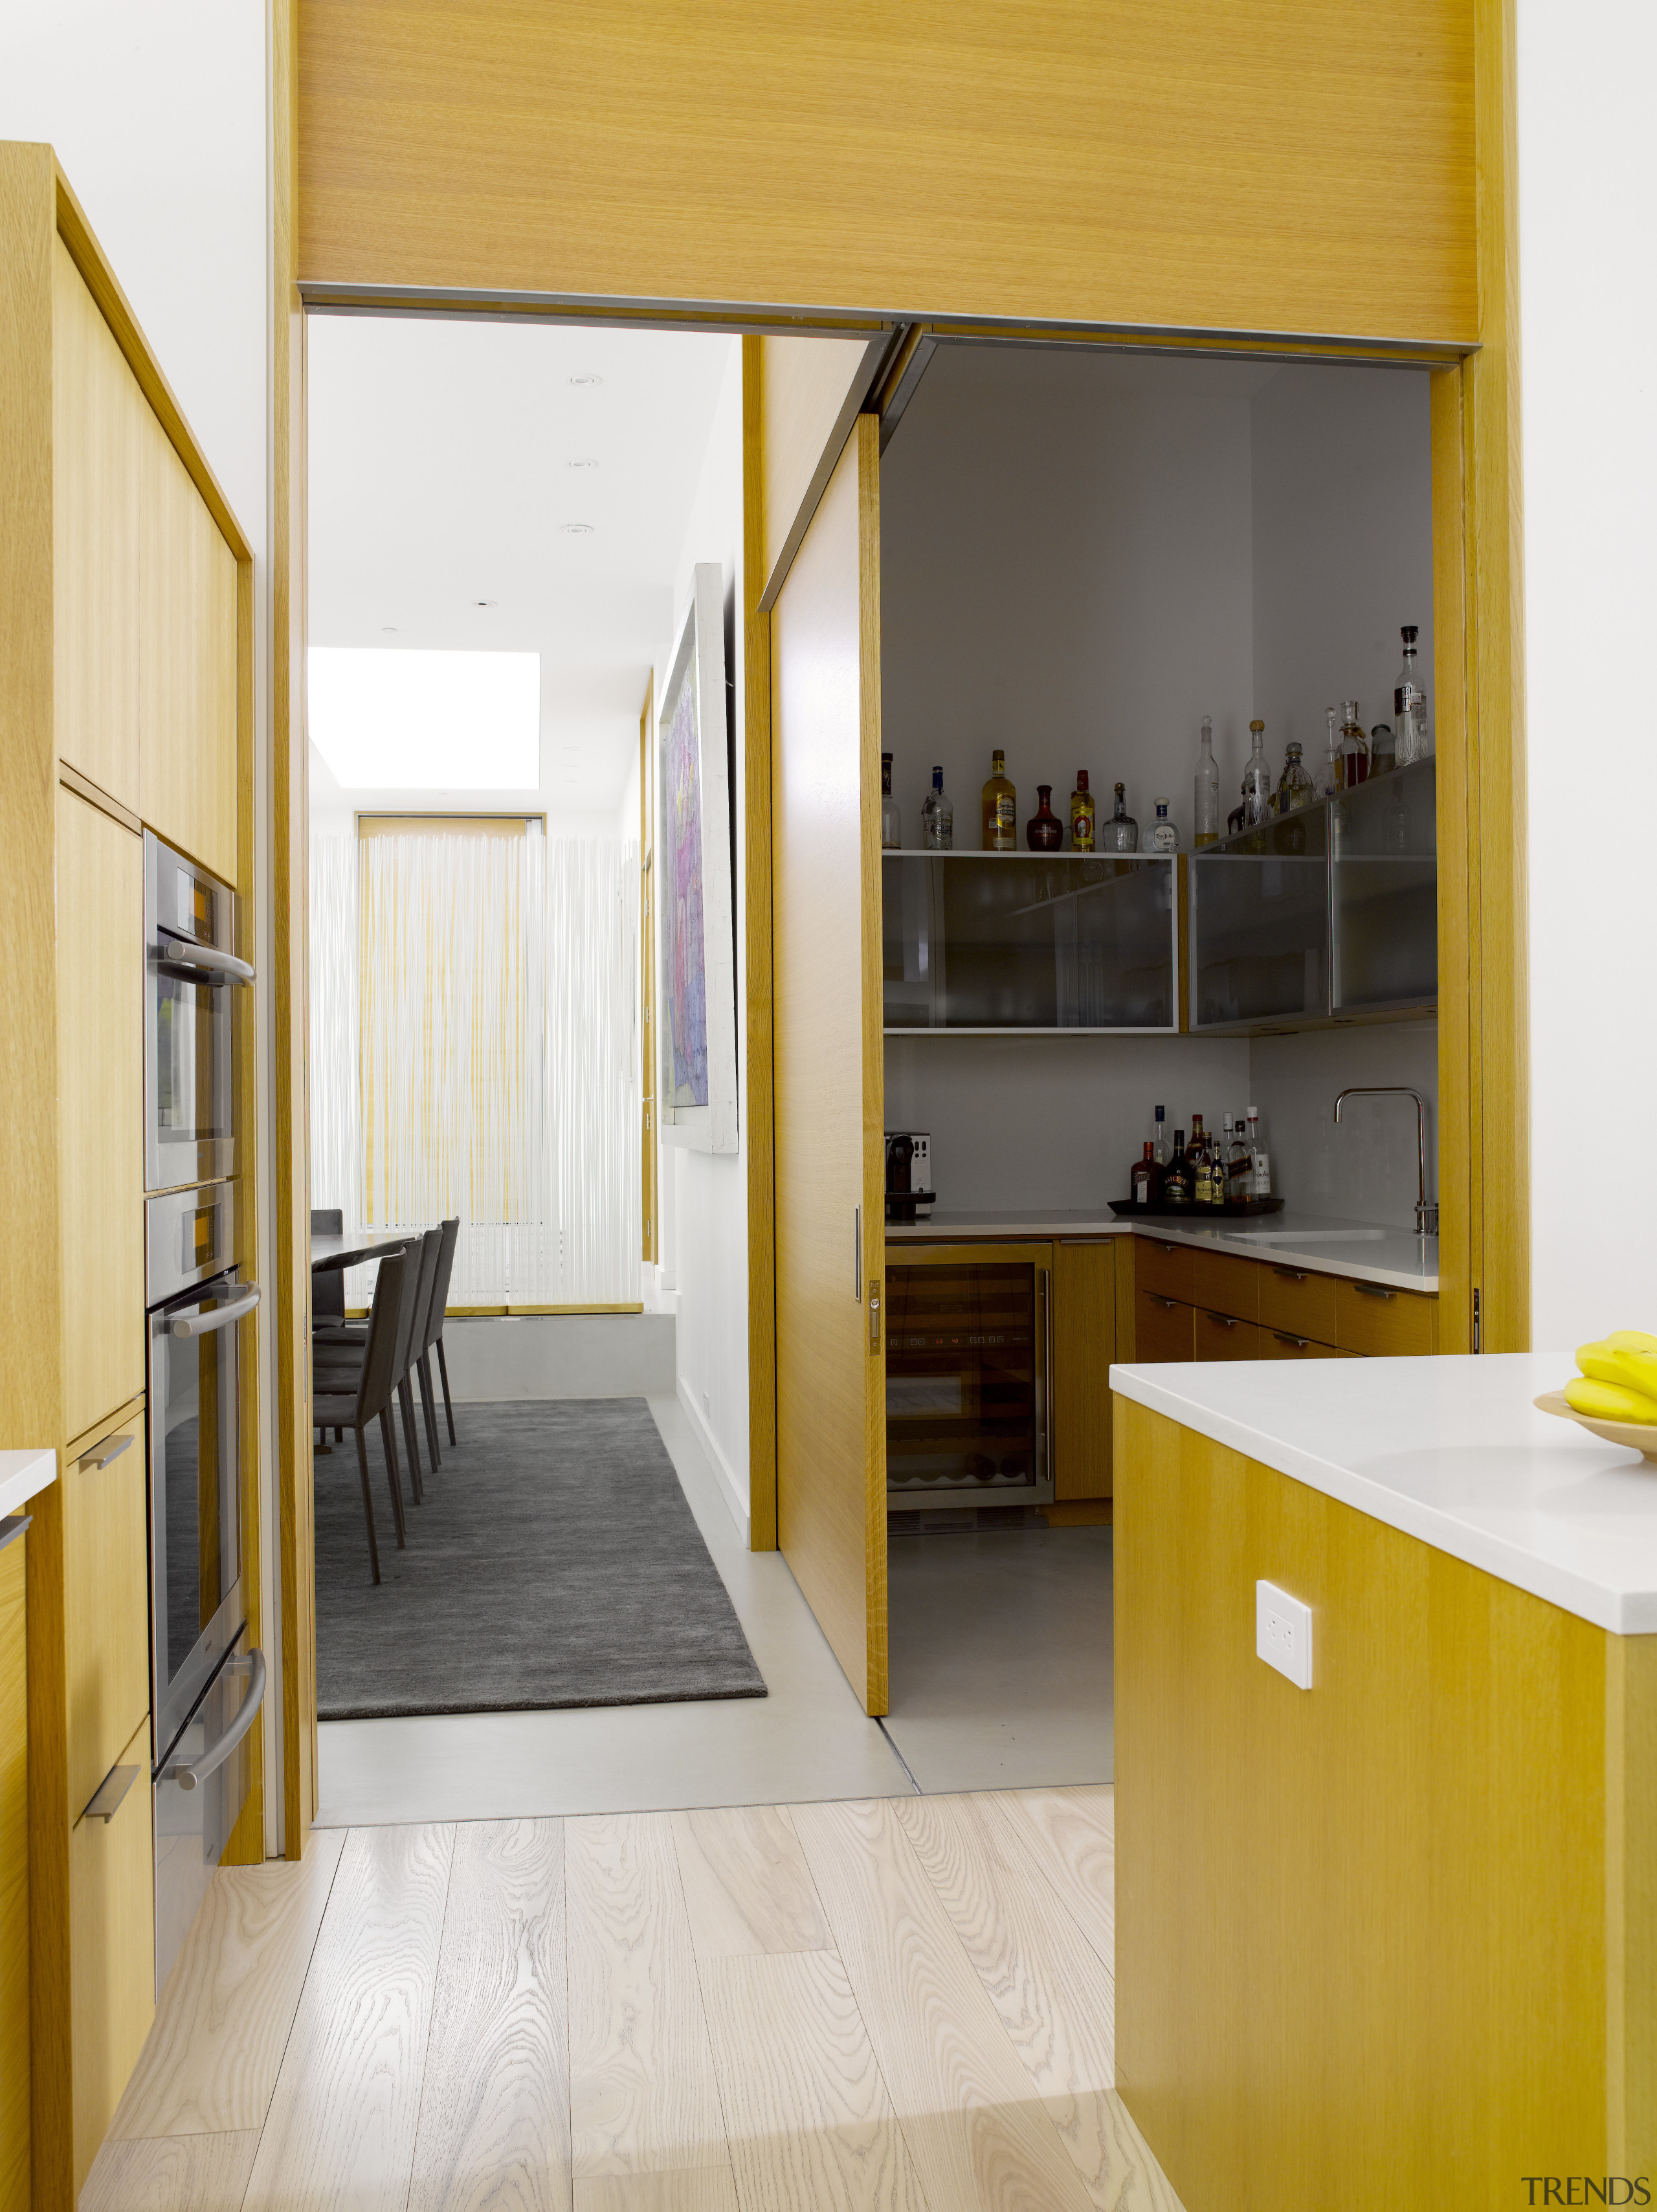 Seen here is a kitchen designed by Geoffrey architecture, cabinetry, countertop, door, floor, flooring, house, interior design, kitchen, white, orange